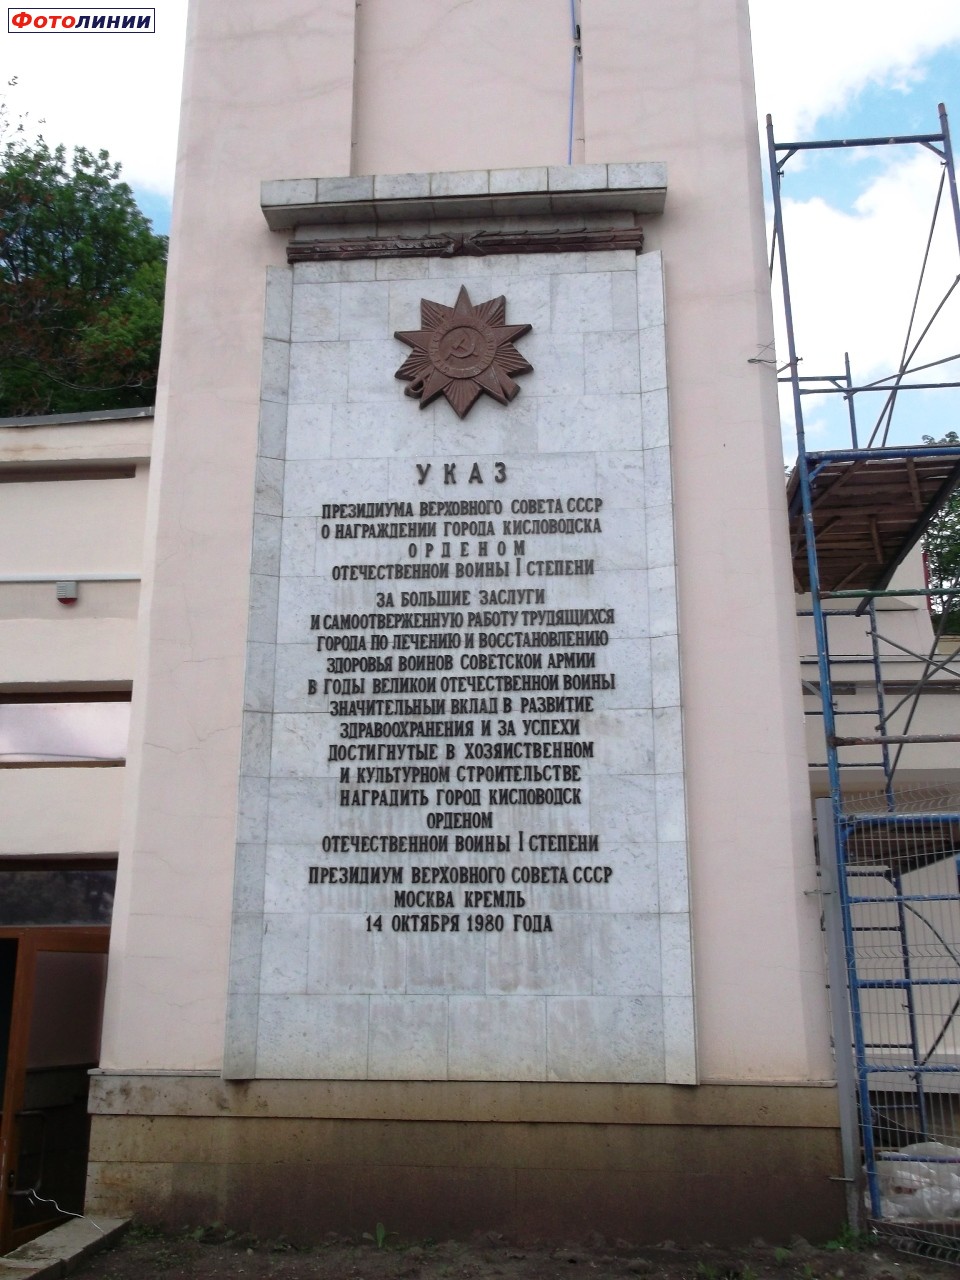 Текст указа президиума СССР на здании вокзала